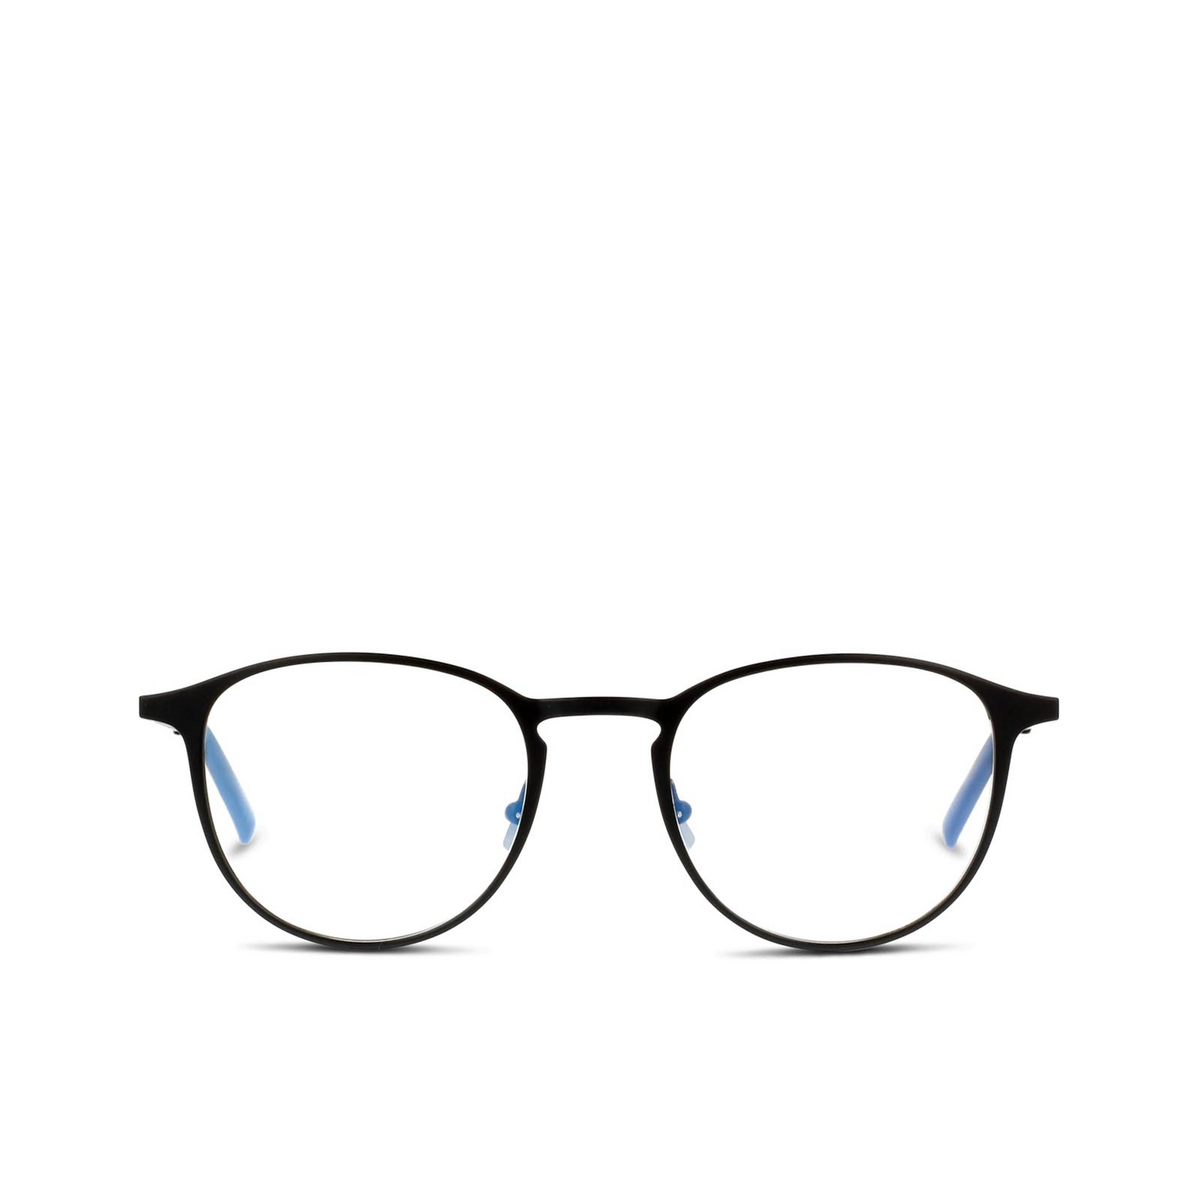 Saint Laurent® Round Eyeglasses: SL 179 color Black 001 - 1/2.